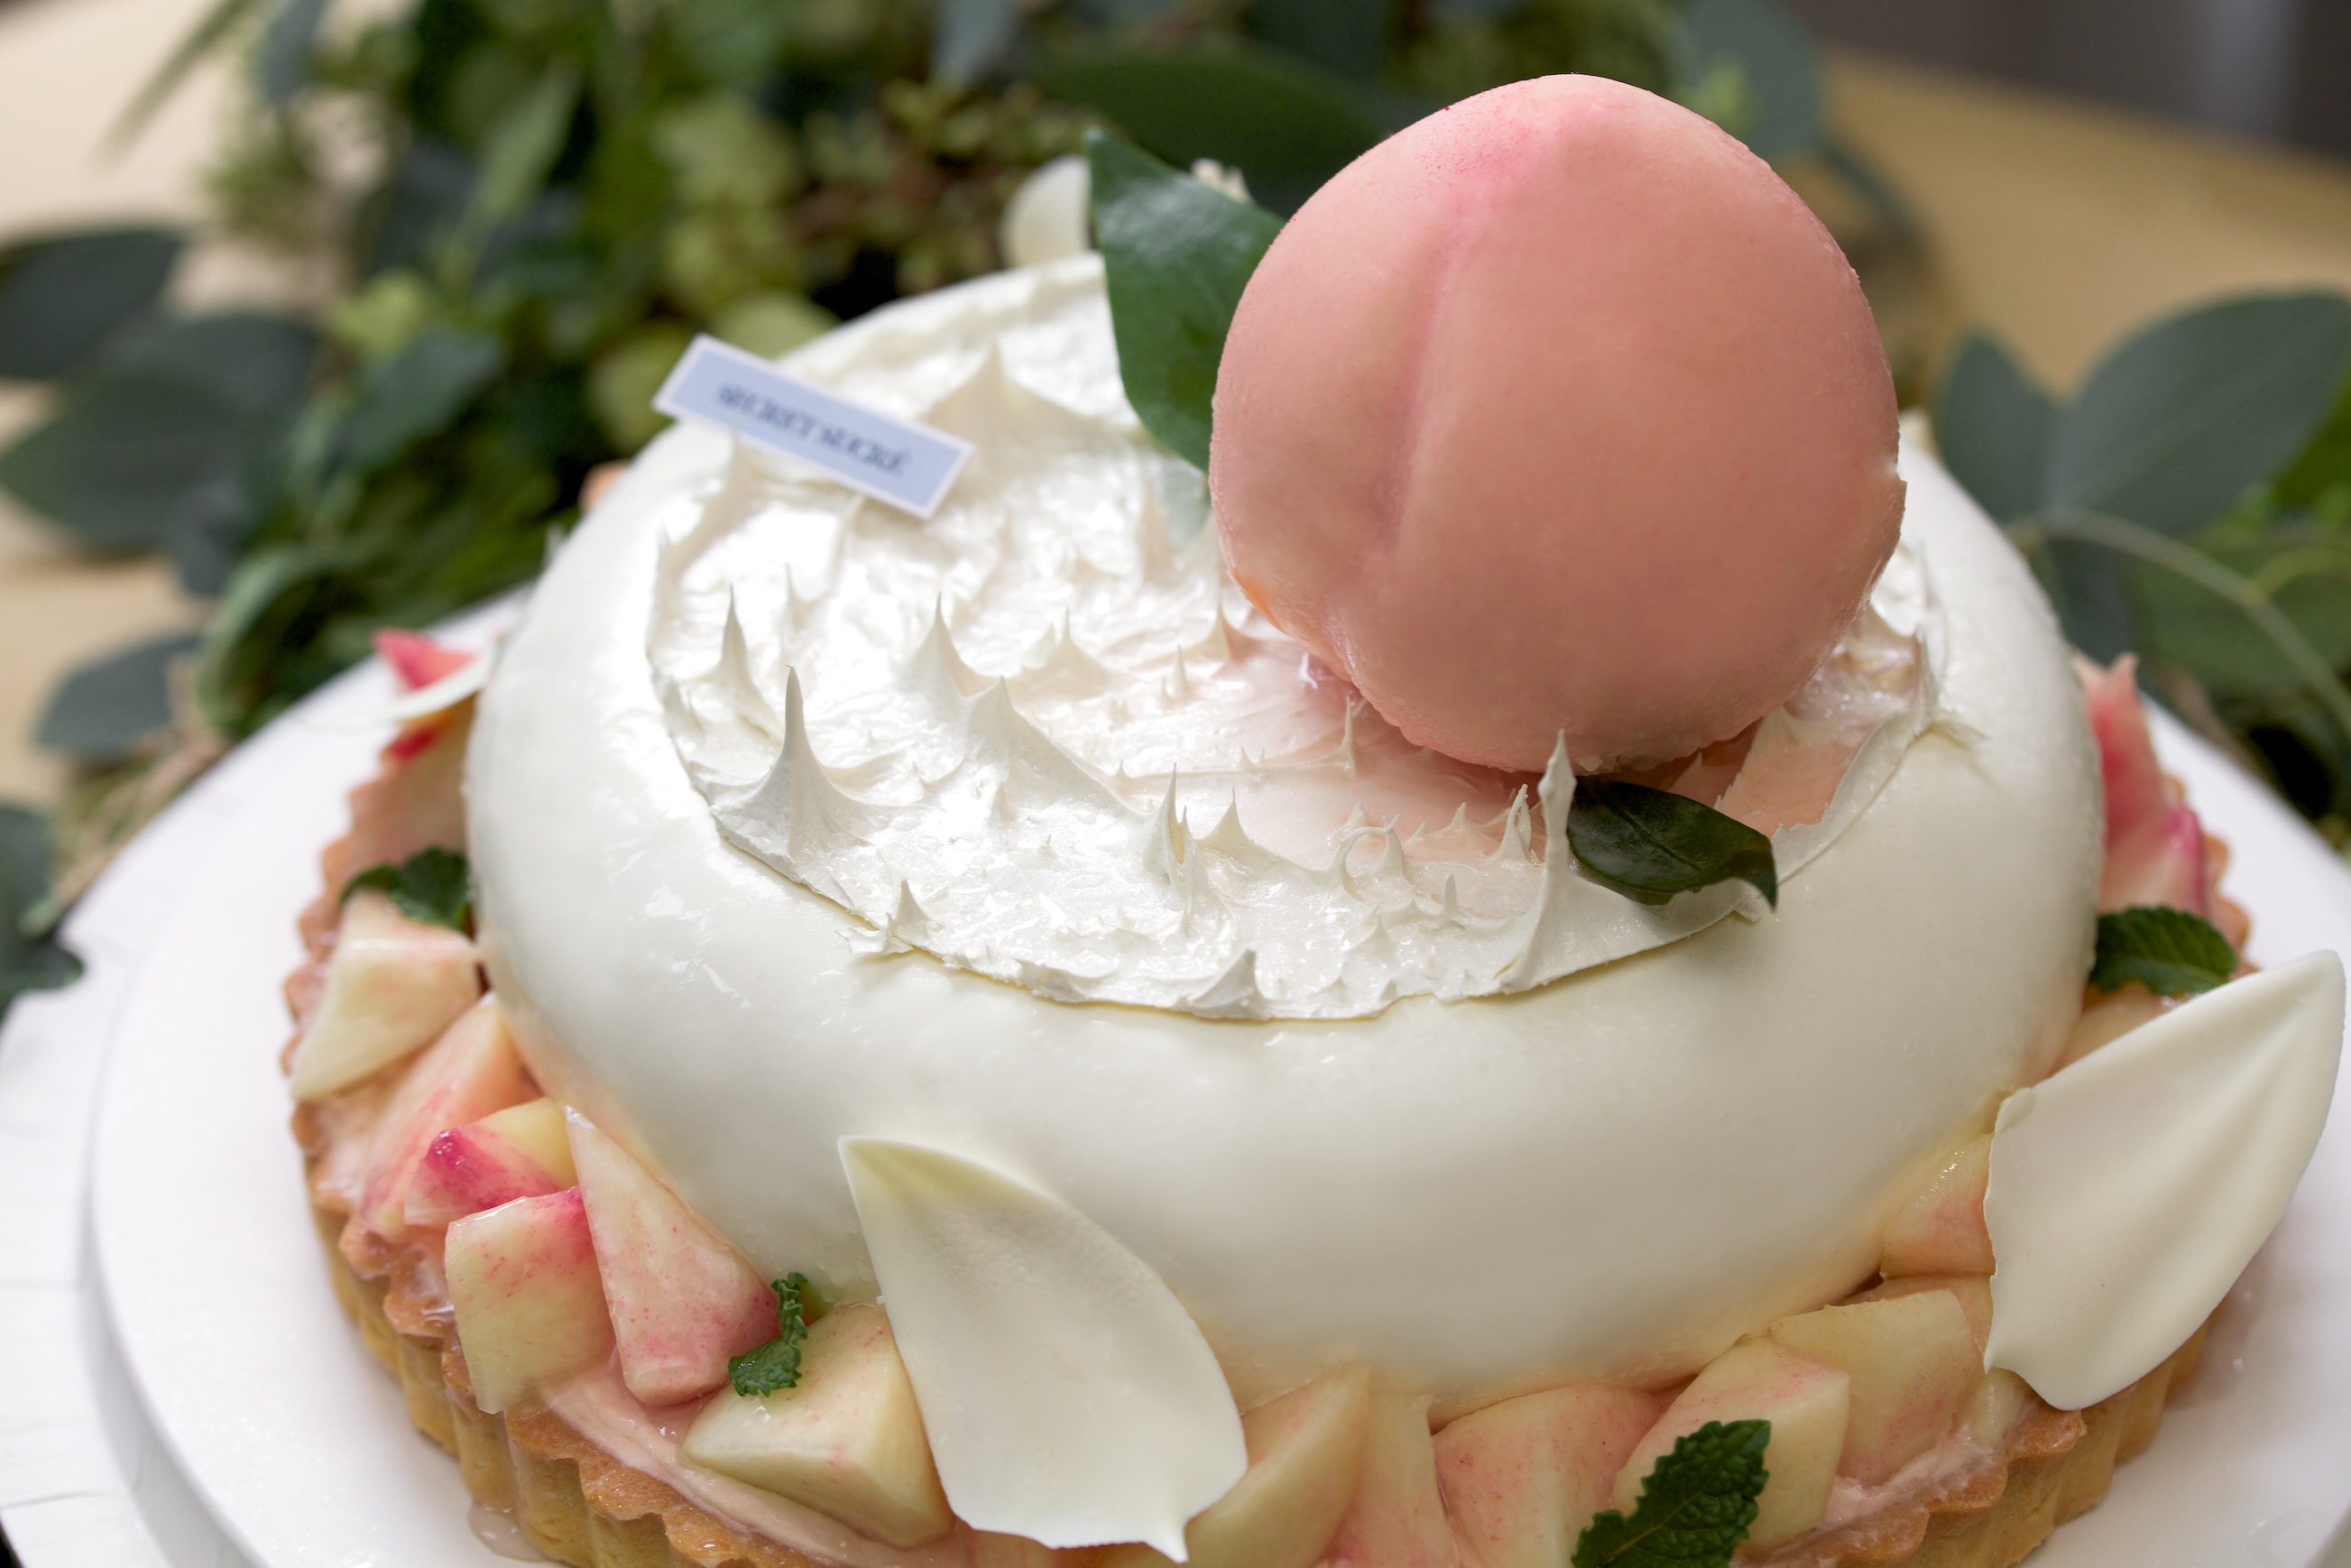 商品详情 接着就设计了这款生日聚会蛋糕——福桃内馅儿取水蜜桃的甜